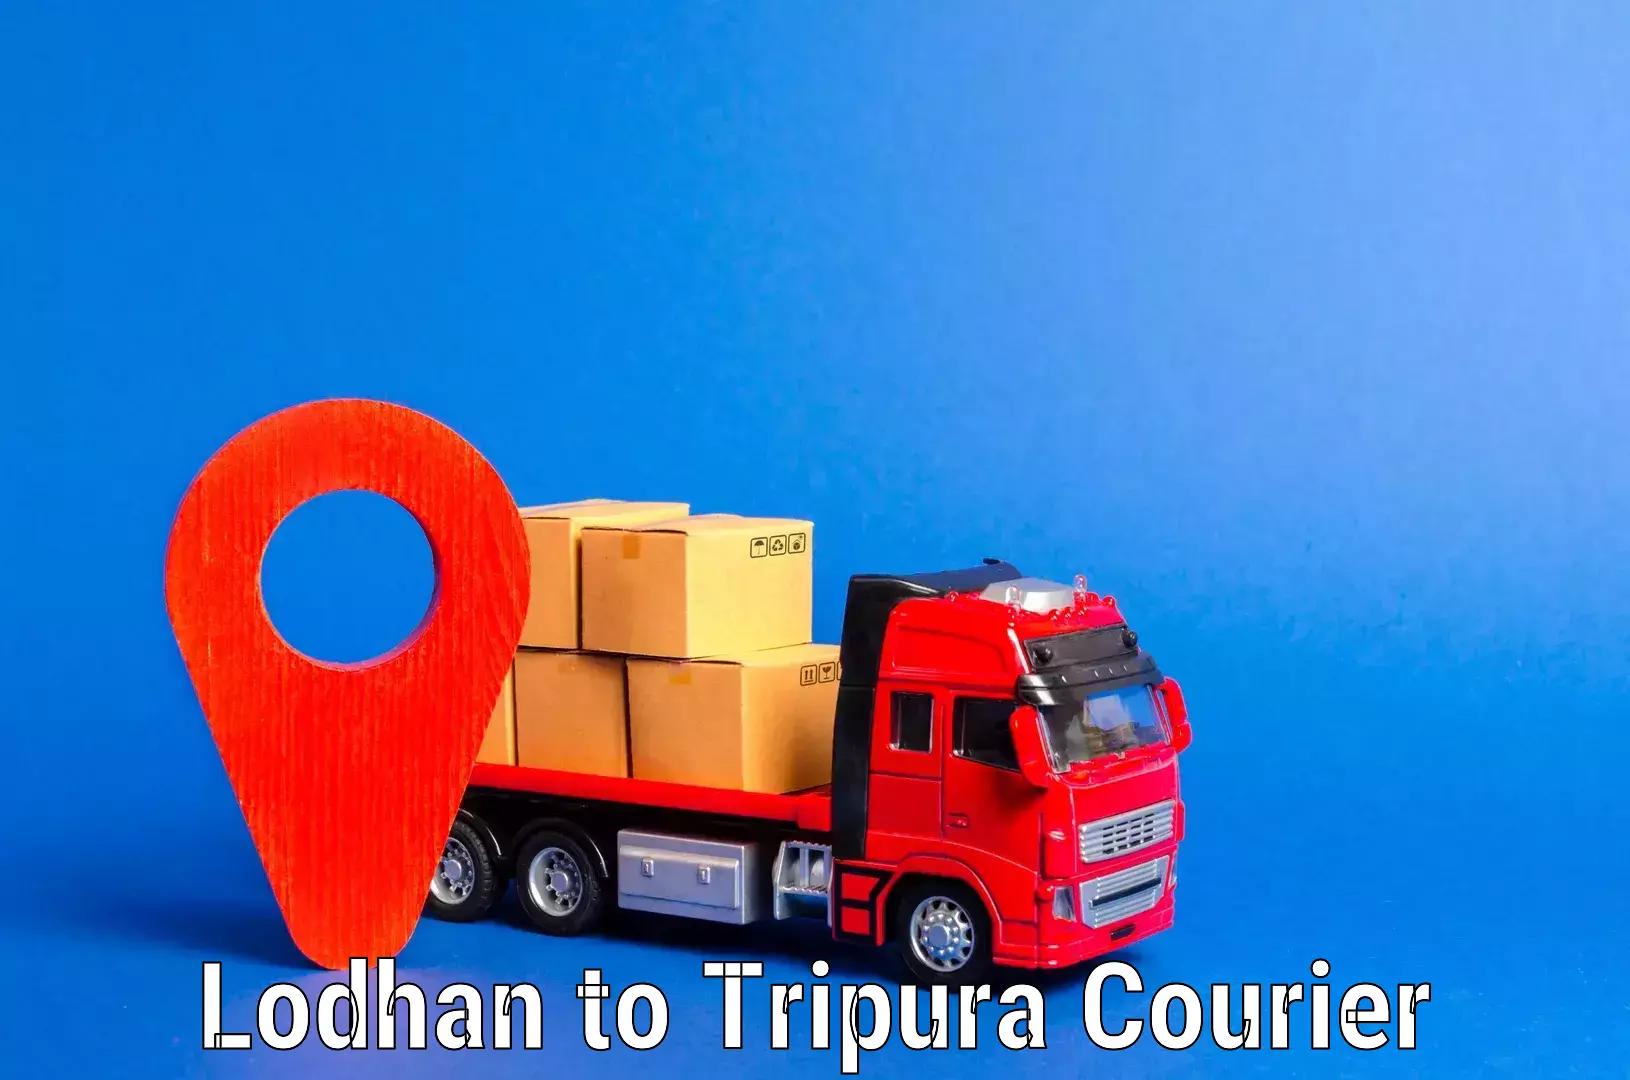 Furniture moving experts Lodhan to Tripura